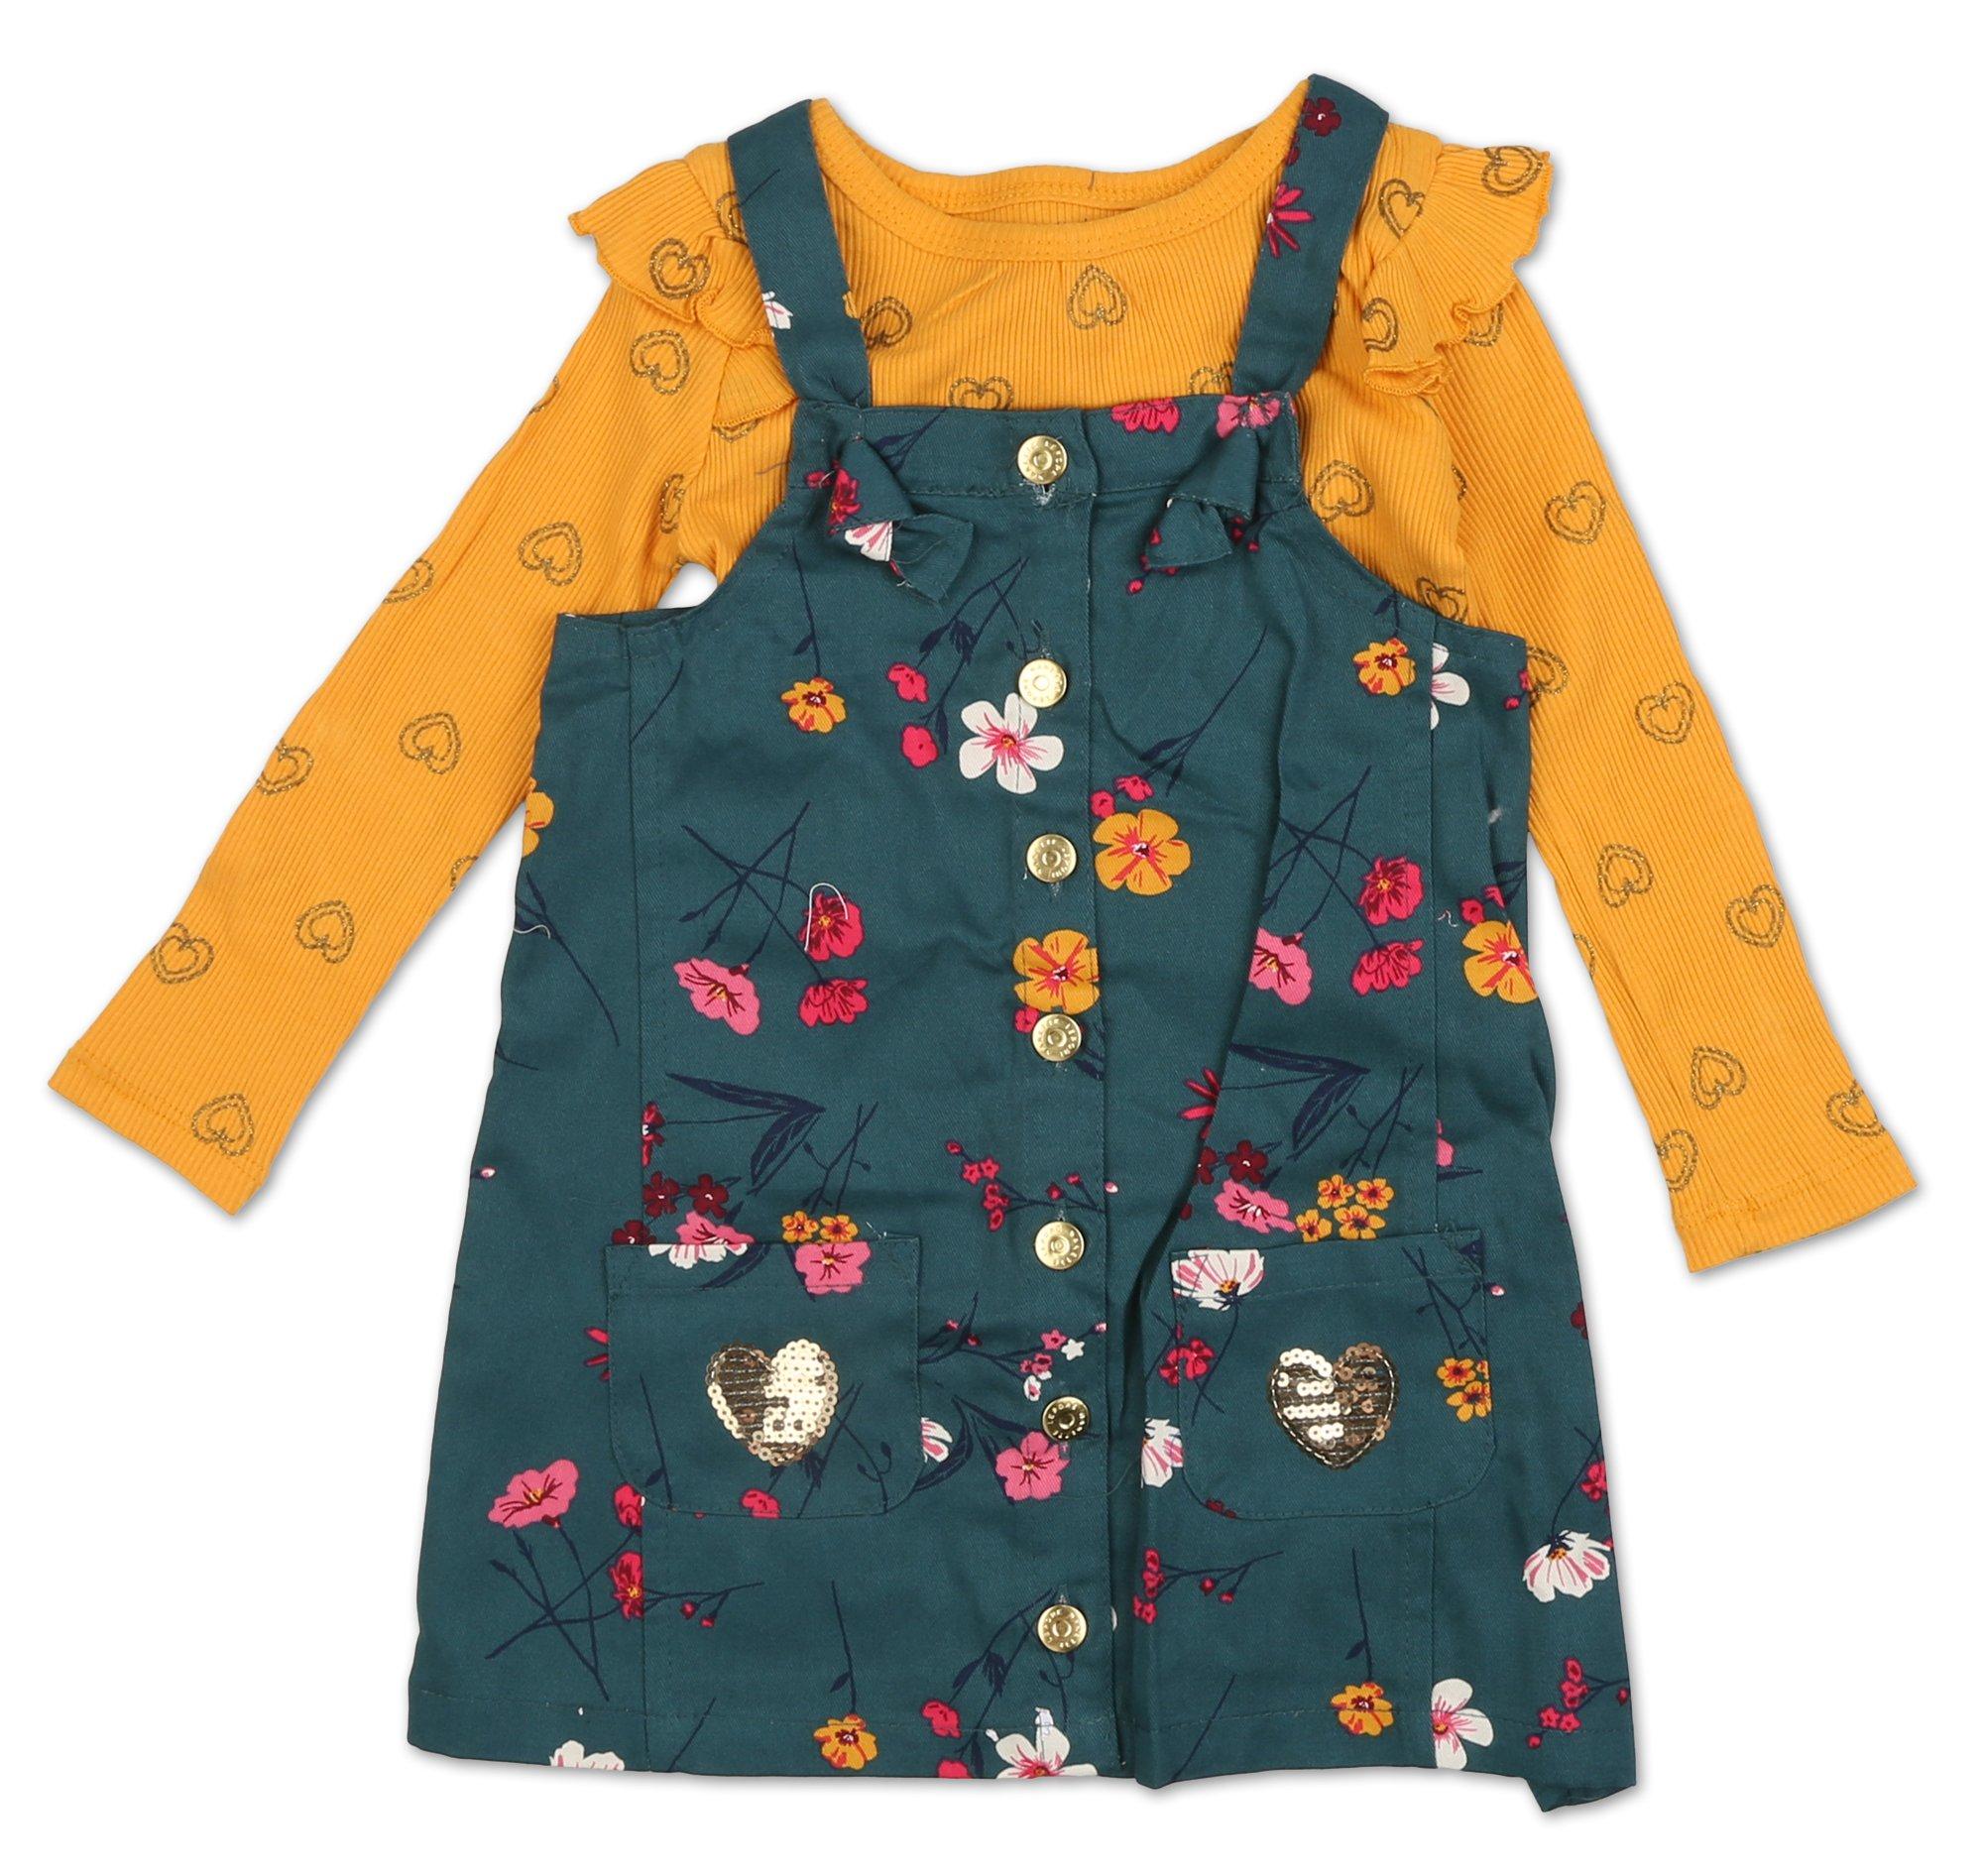 Toddler Girls 2 Pc Dress Set - Multi